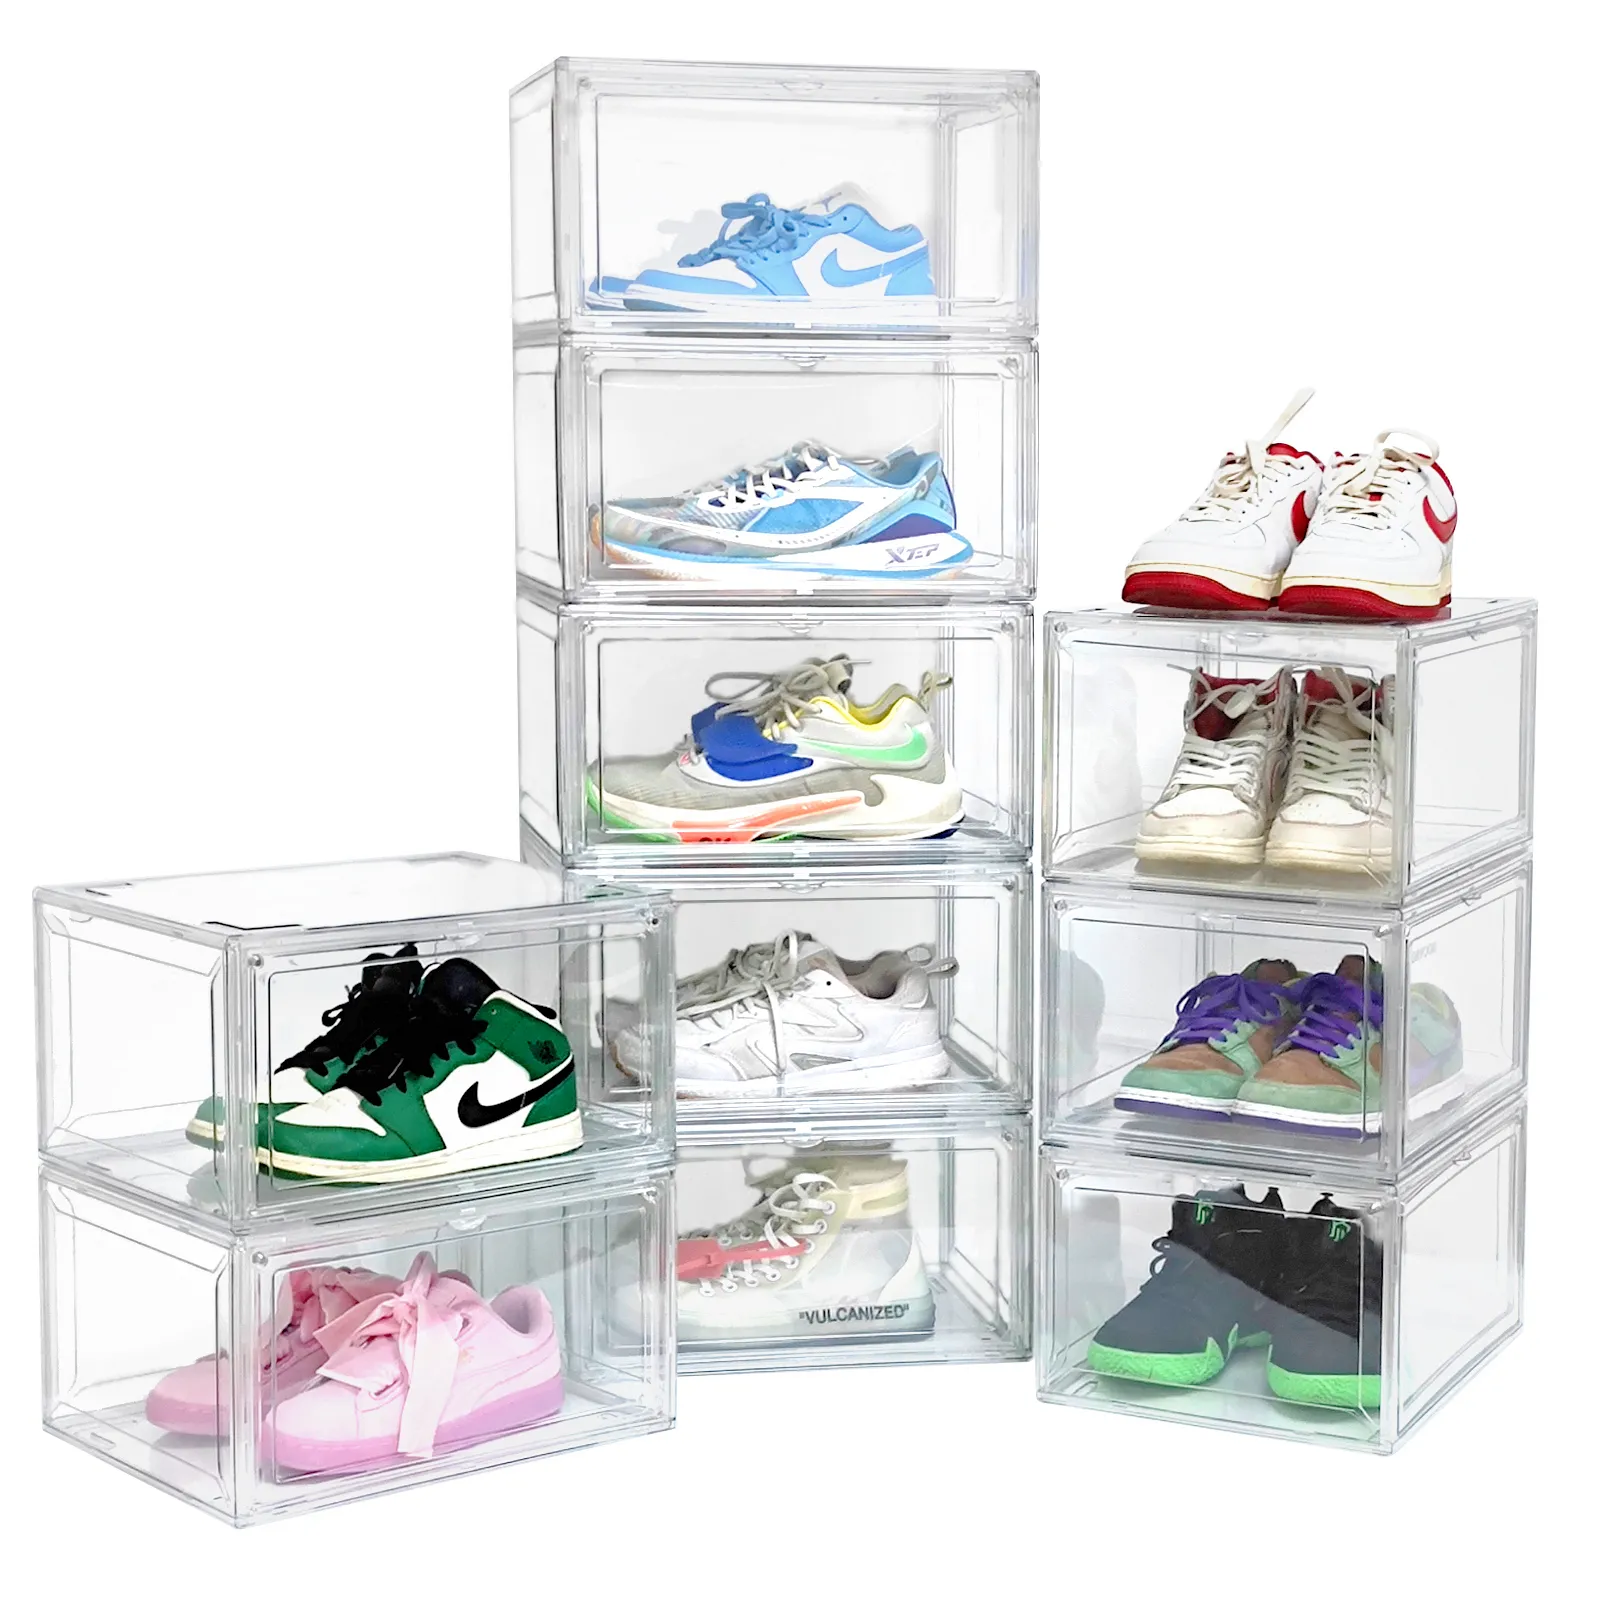 Yeni ayakkabı saklama kutusu es temizle istiflenebilir ayakkabı konteynerler dolap Sneaker depolama için teşhir kutuları ayakkabı Minimalist saklama kutusu